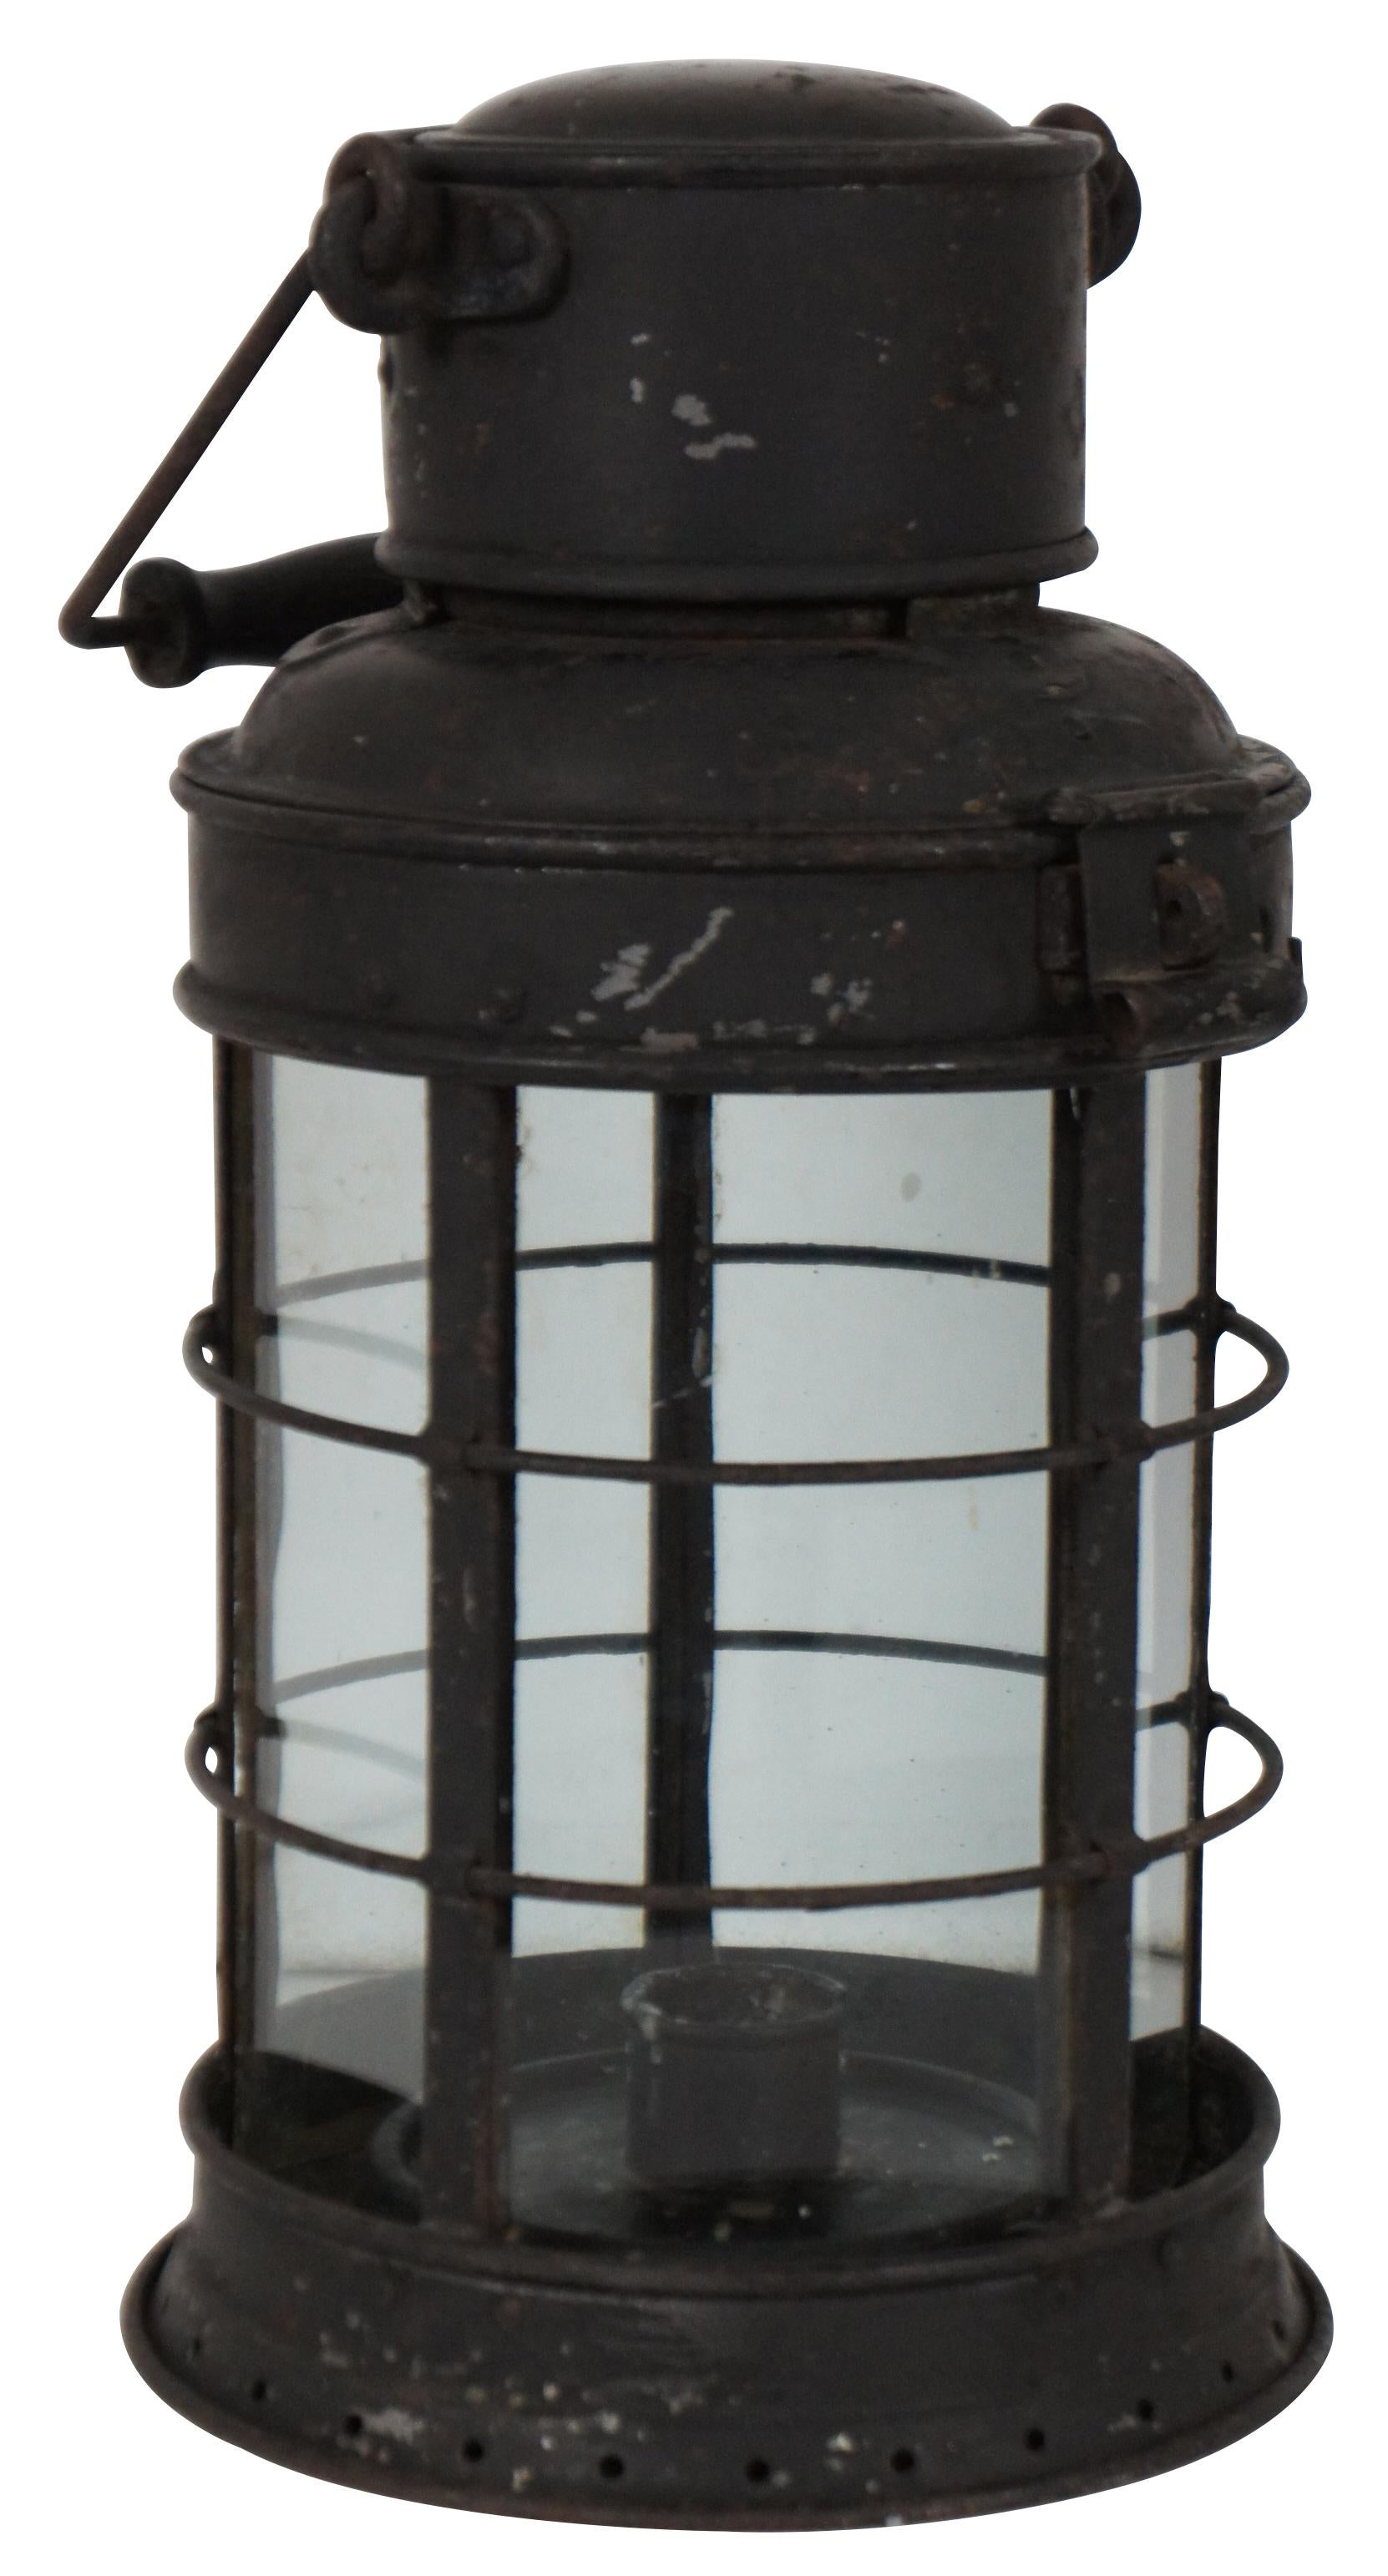 Um 1880 - 1910 - es handelt sich um eine spätviktorianische Lampe mit Kerzenlicht, die wahrscheinlich für die Eisenbahn bestimmt war. Sie wurde von der Firma Eli Griffiths and Son hergestellt, die für die Herstellung von Artikeln für die Eisenbahn